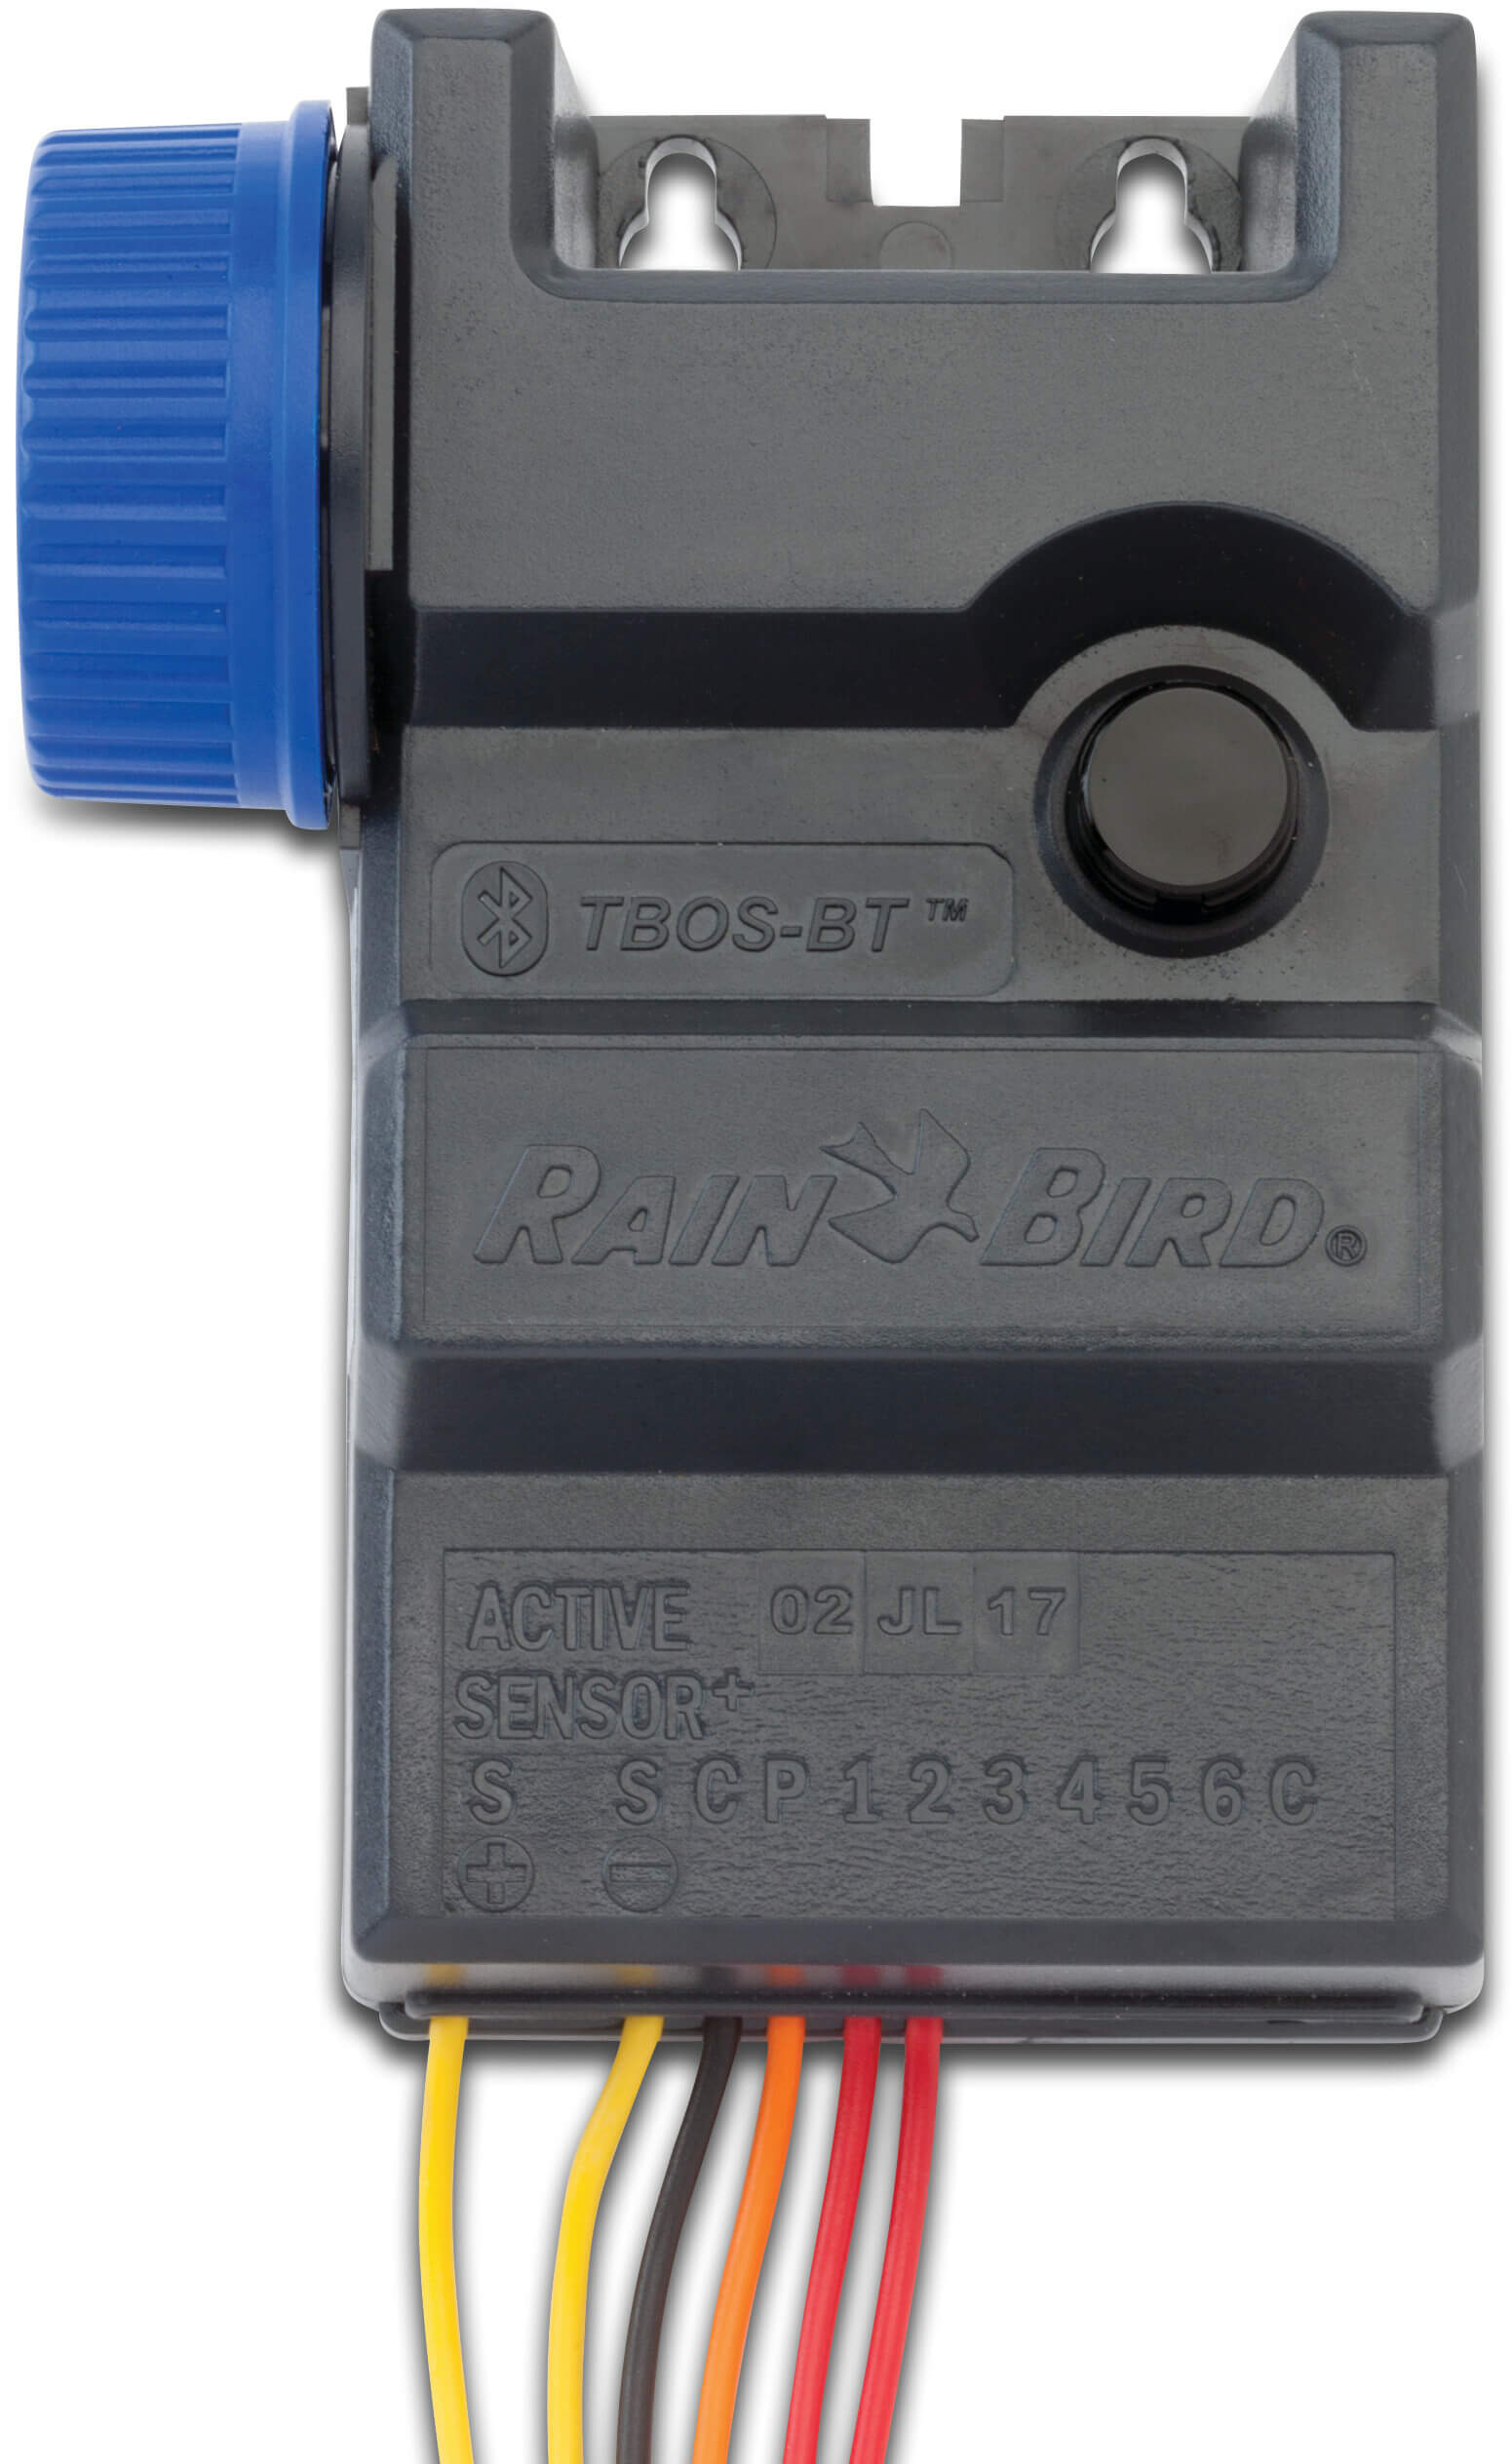 Rain Bird Bluetooth Funk Steuerung 9V type TBOSBT-LT 1 Stationen